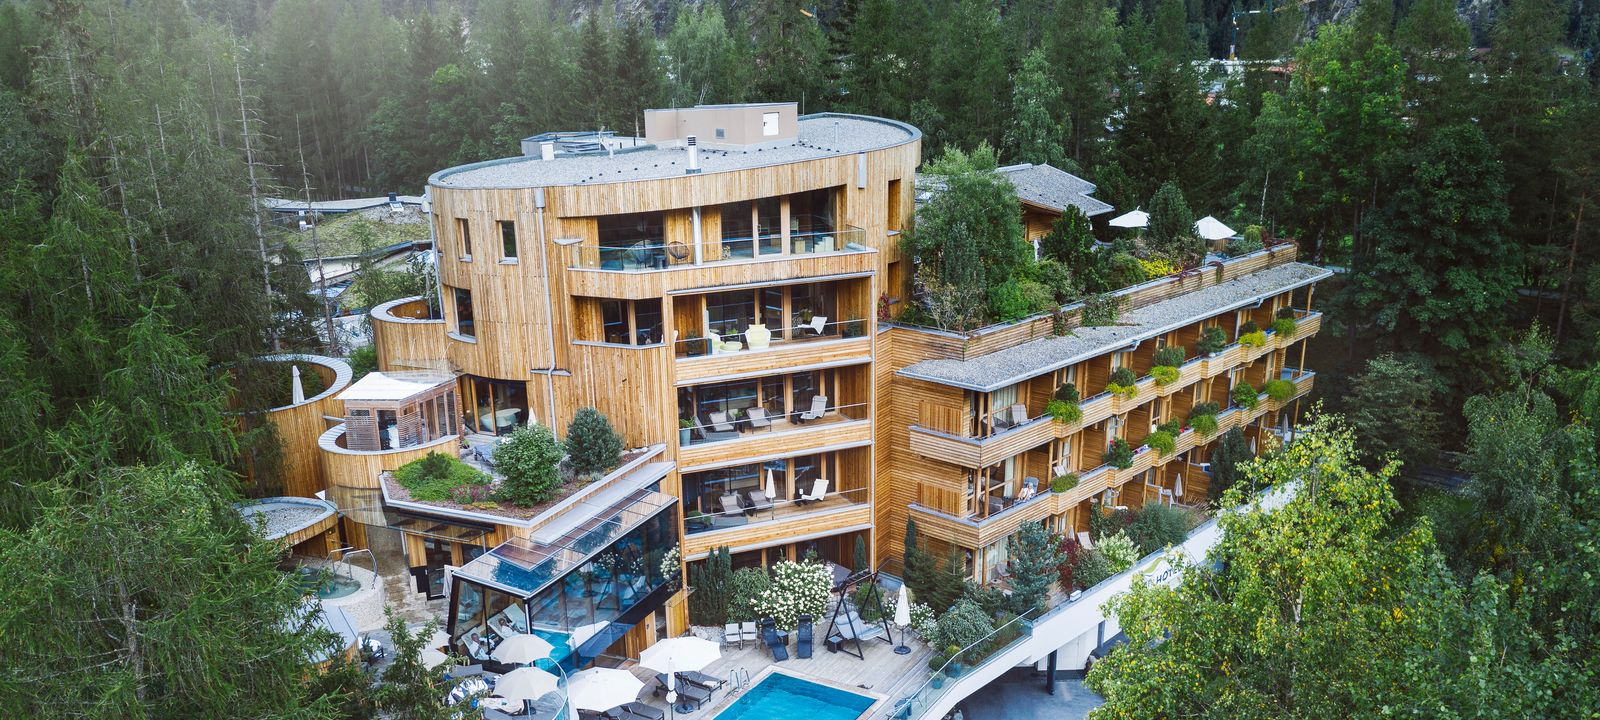 Naturhotel-Waldklause in Längenfeld, Ötztal, Tirol, Österreich - Bild #1